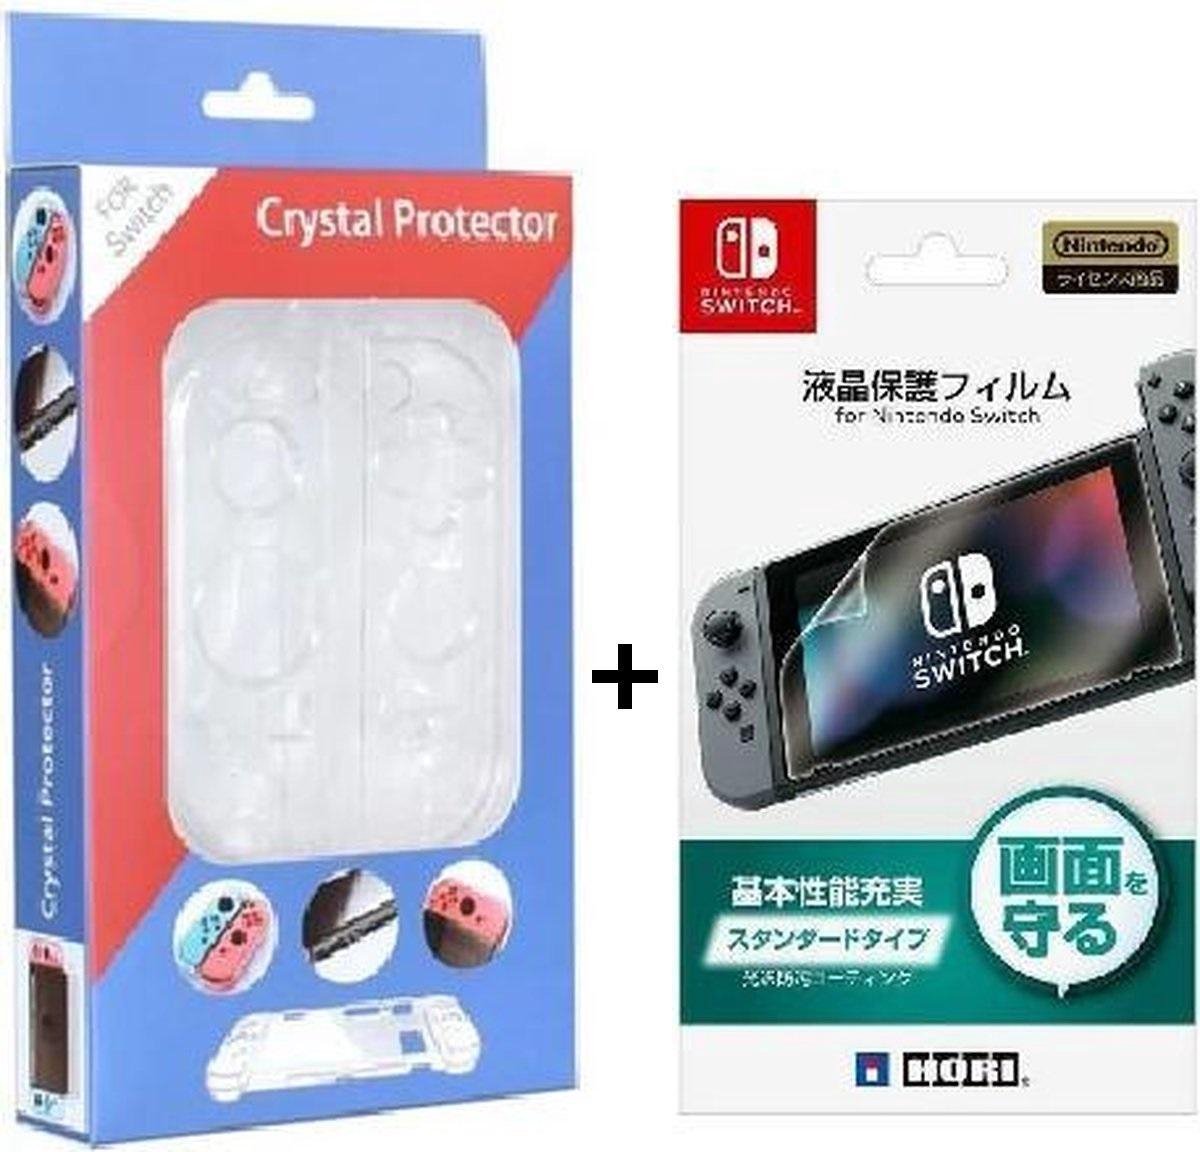 BEST GETEST !!!! Behuizing case Crystal + screen protector HORI (2 in 1) geschikt voor Nintendo Switch